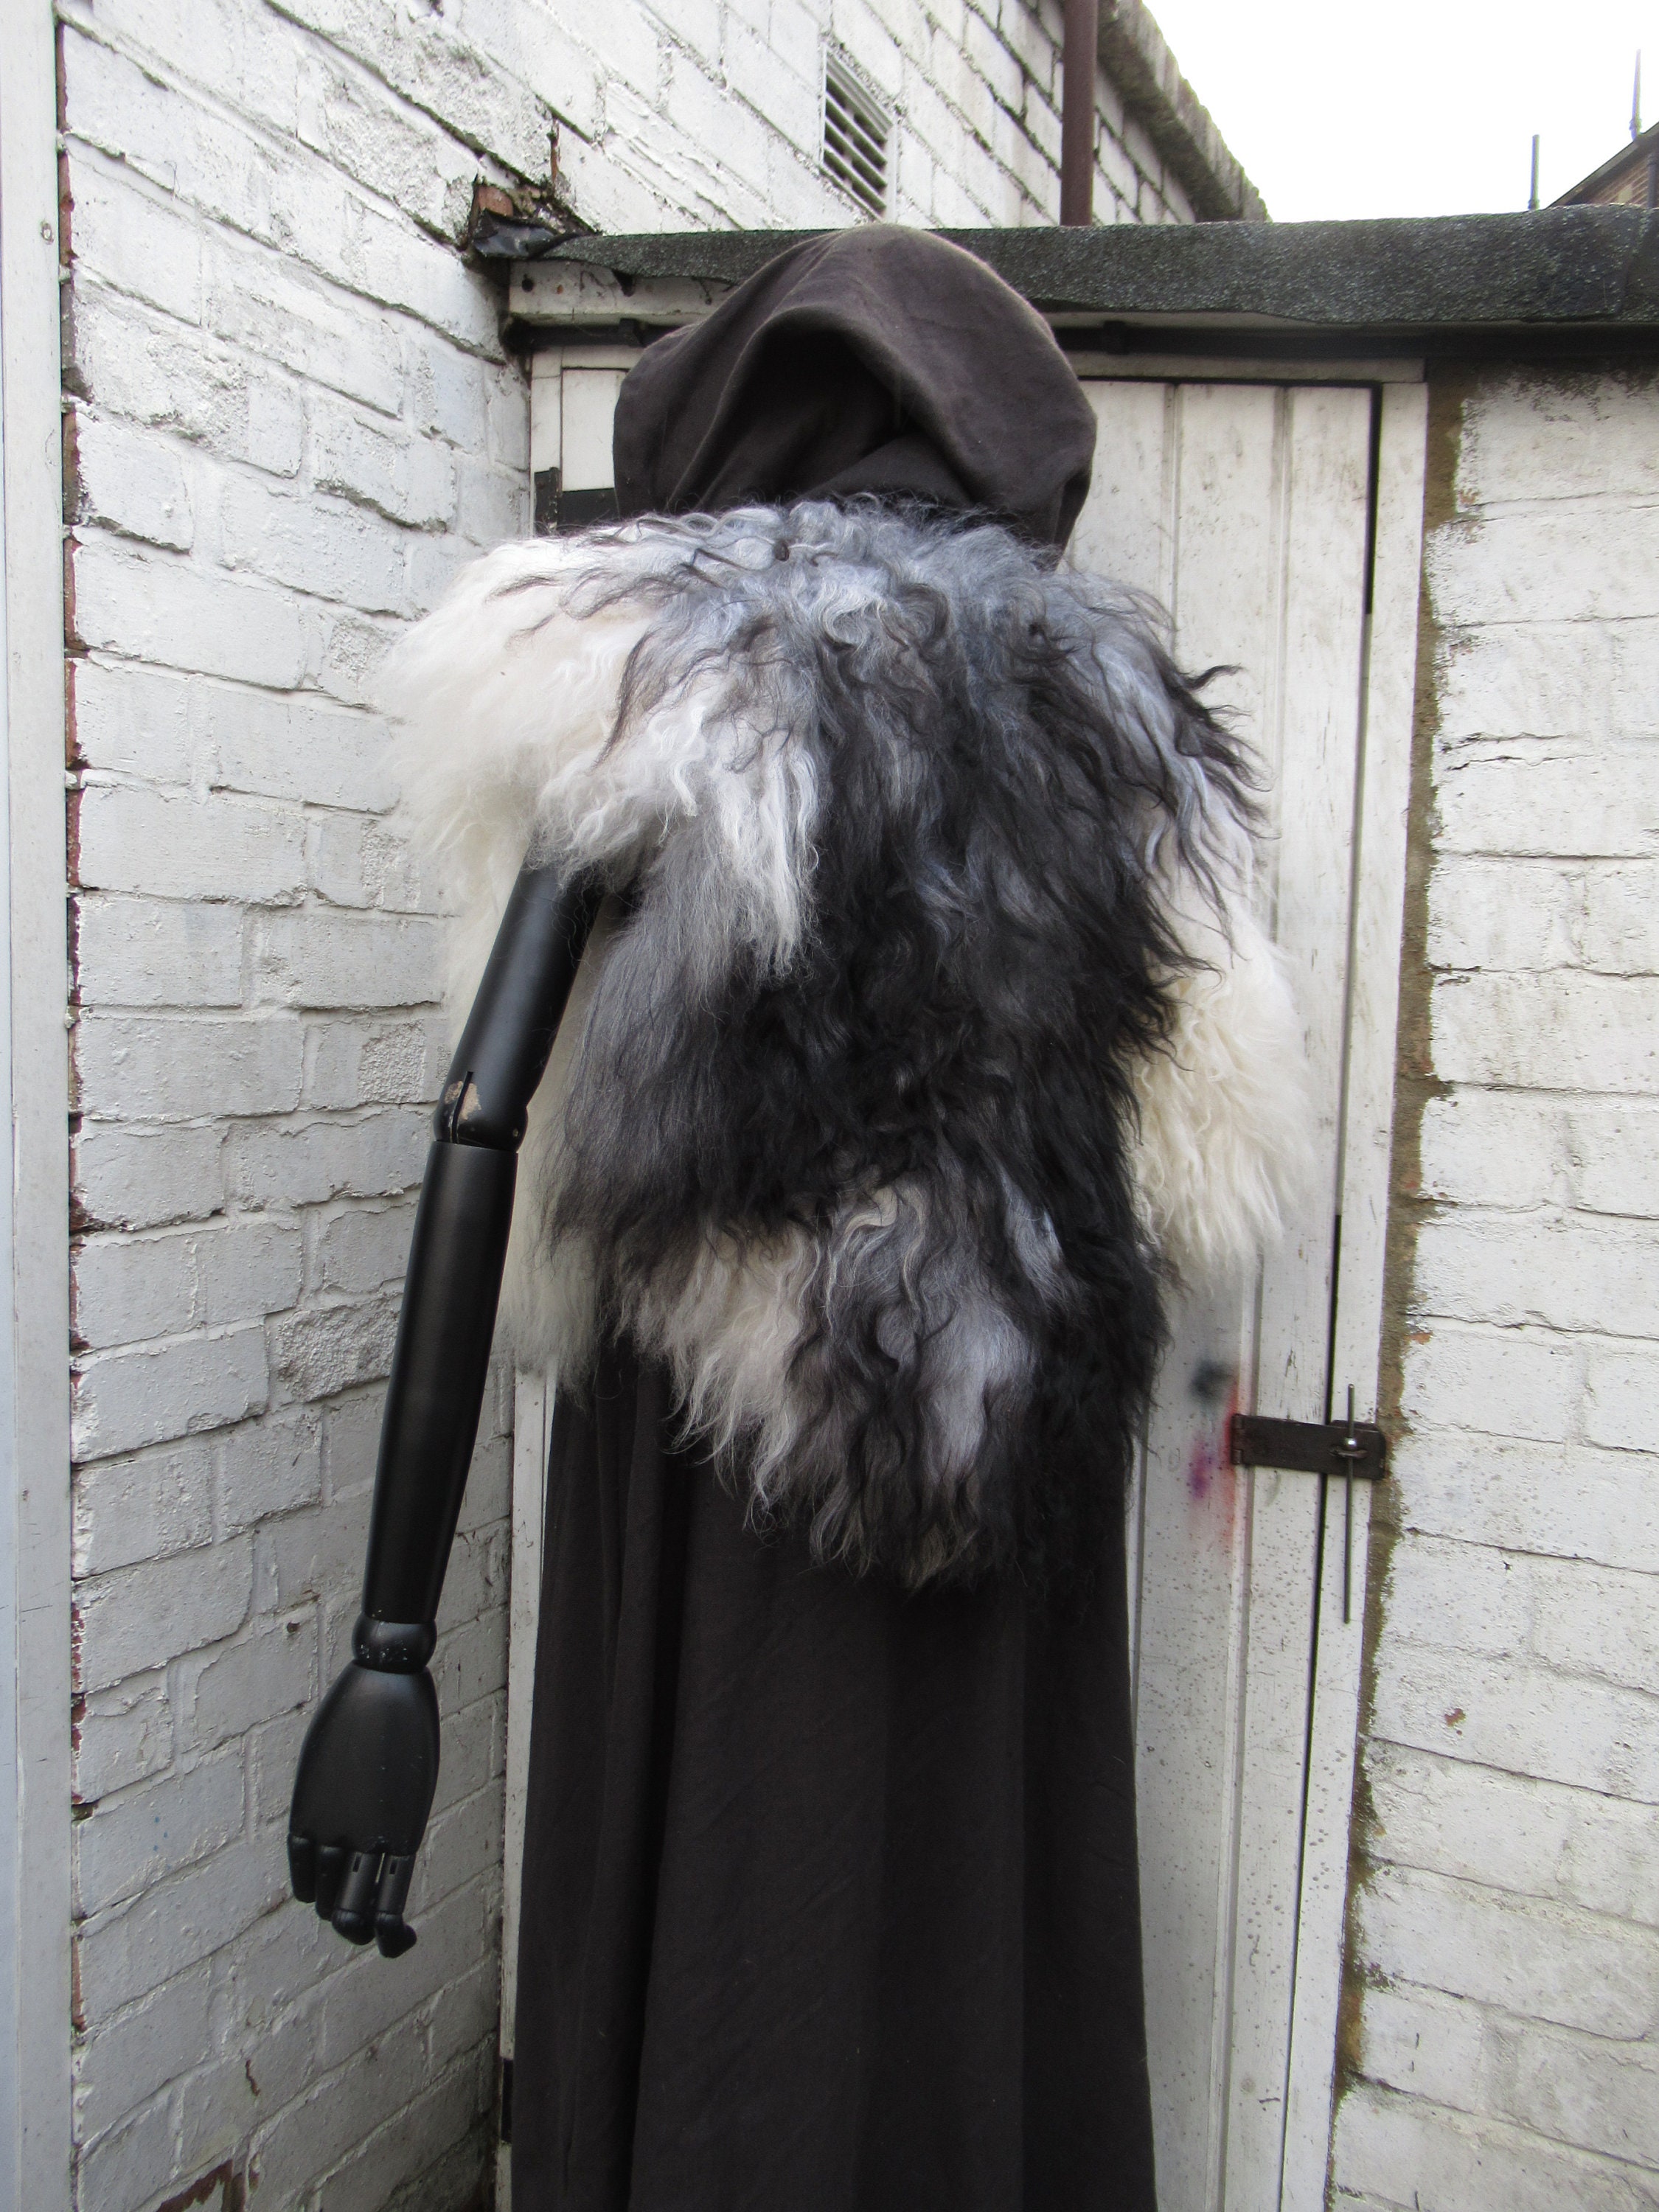 Viking Fur Mantle, Capelet, Medieval, Deluxe Faux Fur Choose Size